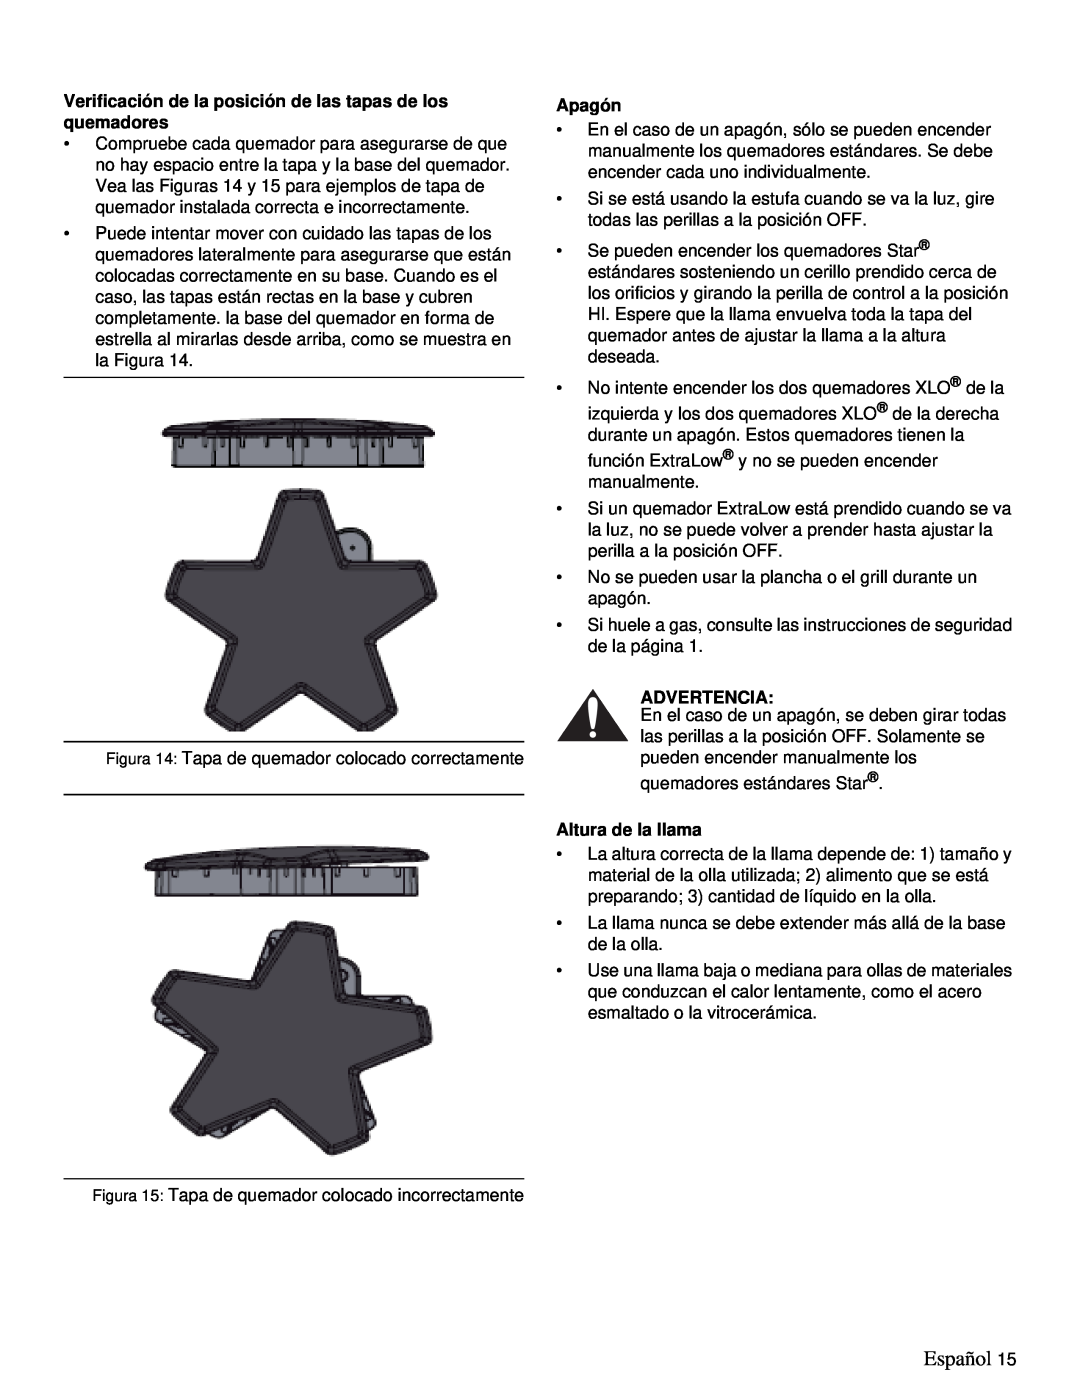 Thermador PRD36, PRD48 manual Español, Apagón, Advertencia, Altura de la llama 